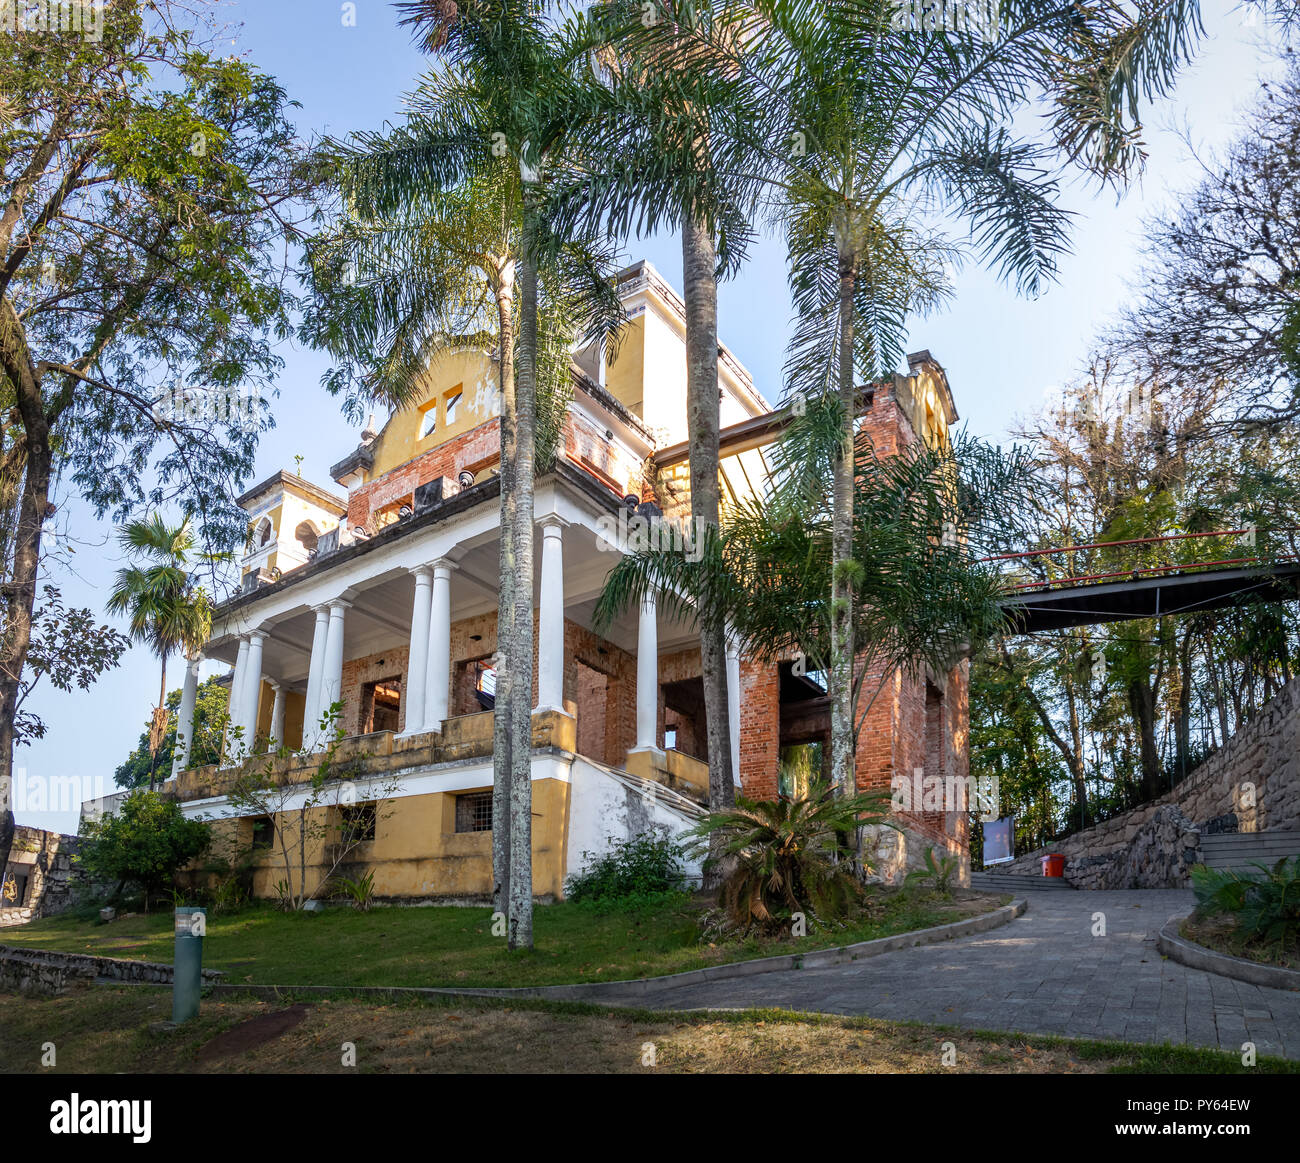 Parque das Ruinas in Santa Teresa Hill, a Public Park with ruins of a mansion - Rio de Janeiro, Brazil Stock Photo